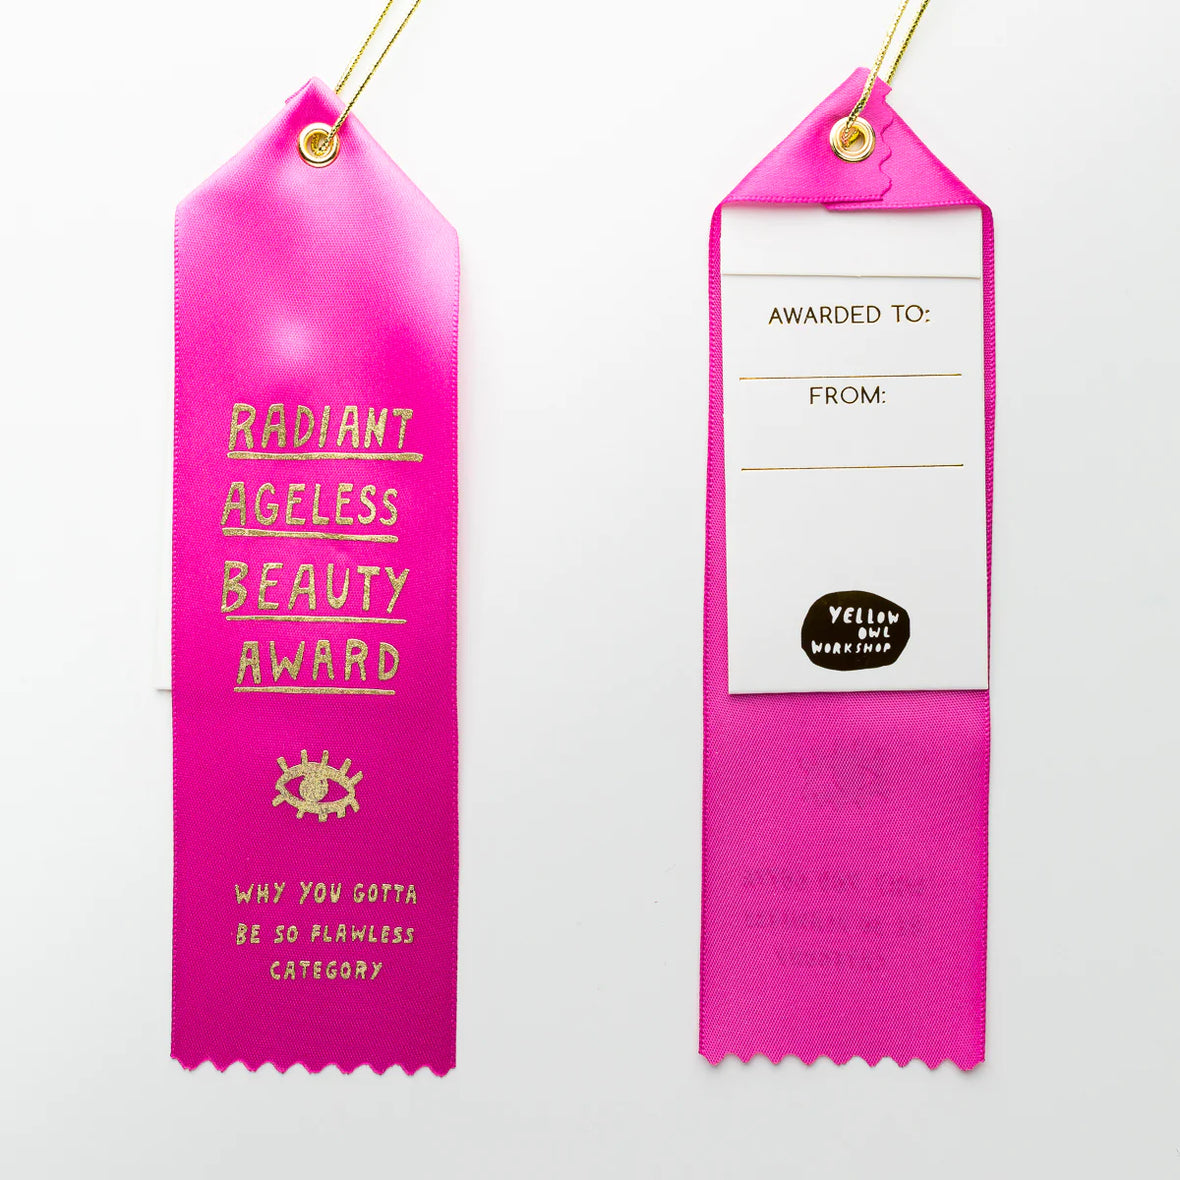 Award Ribbon - Radiant Ageless Beauty